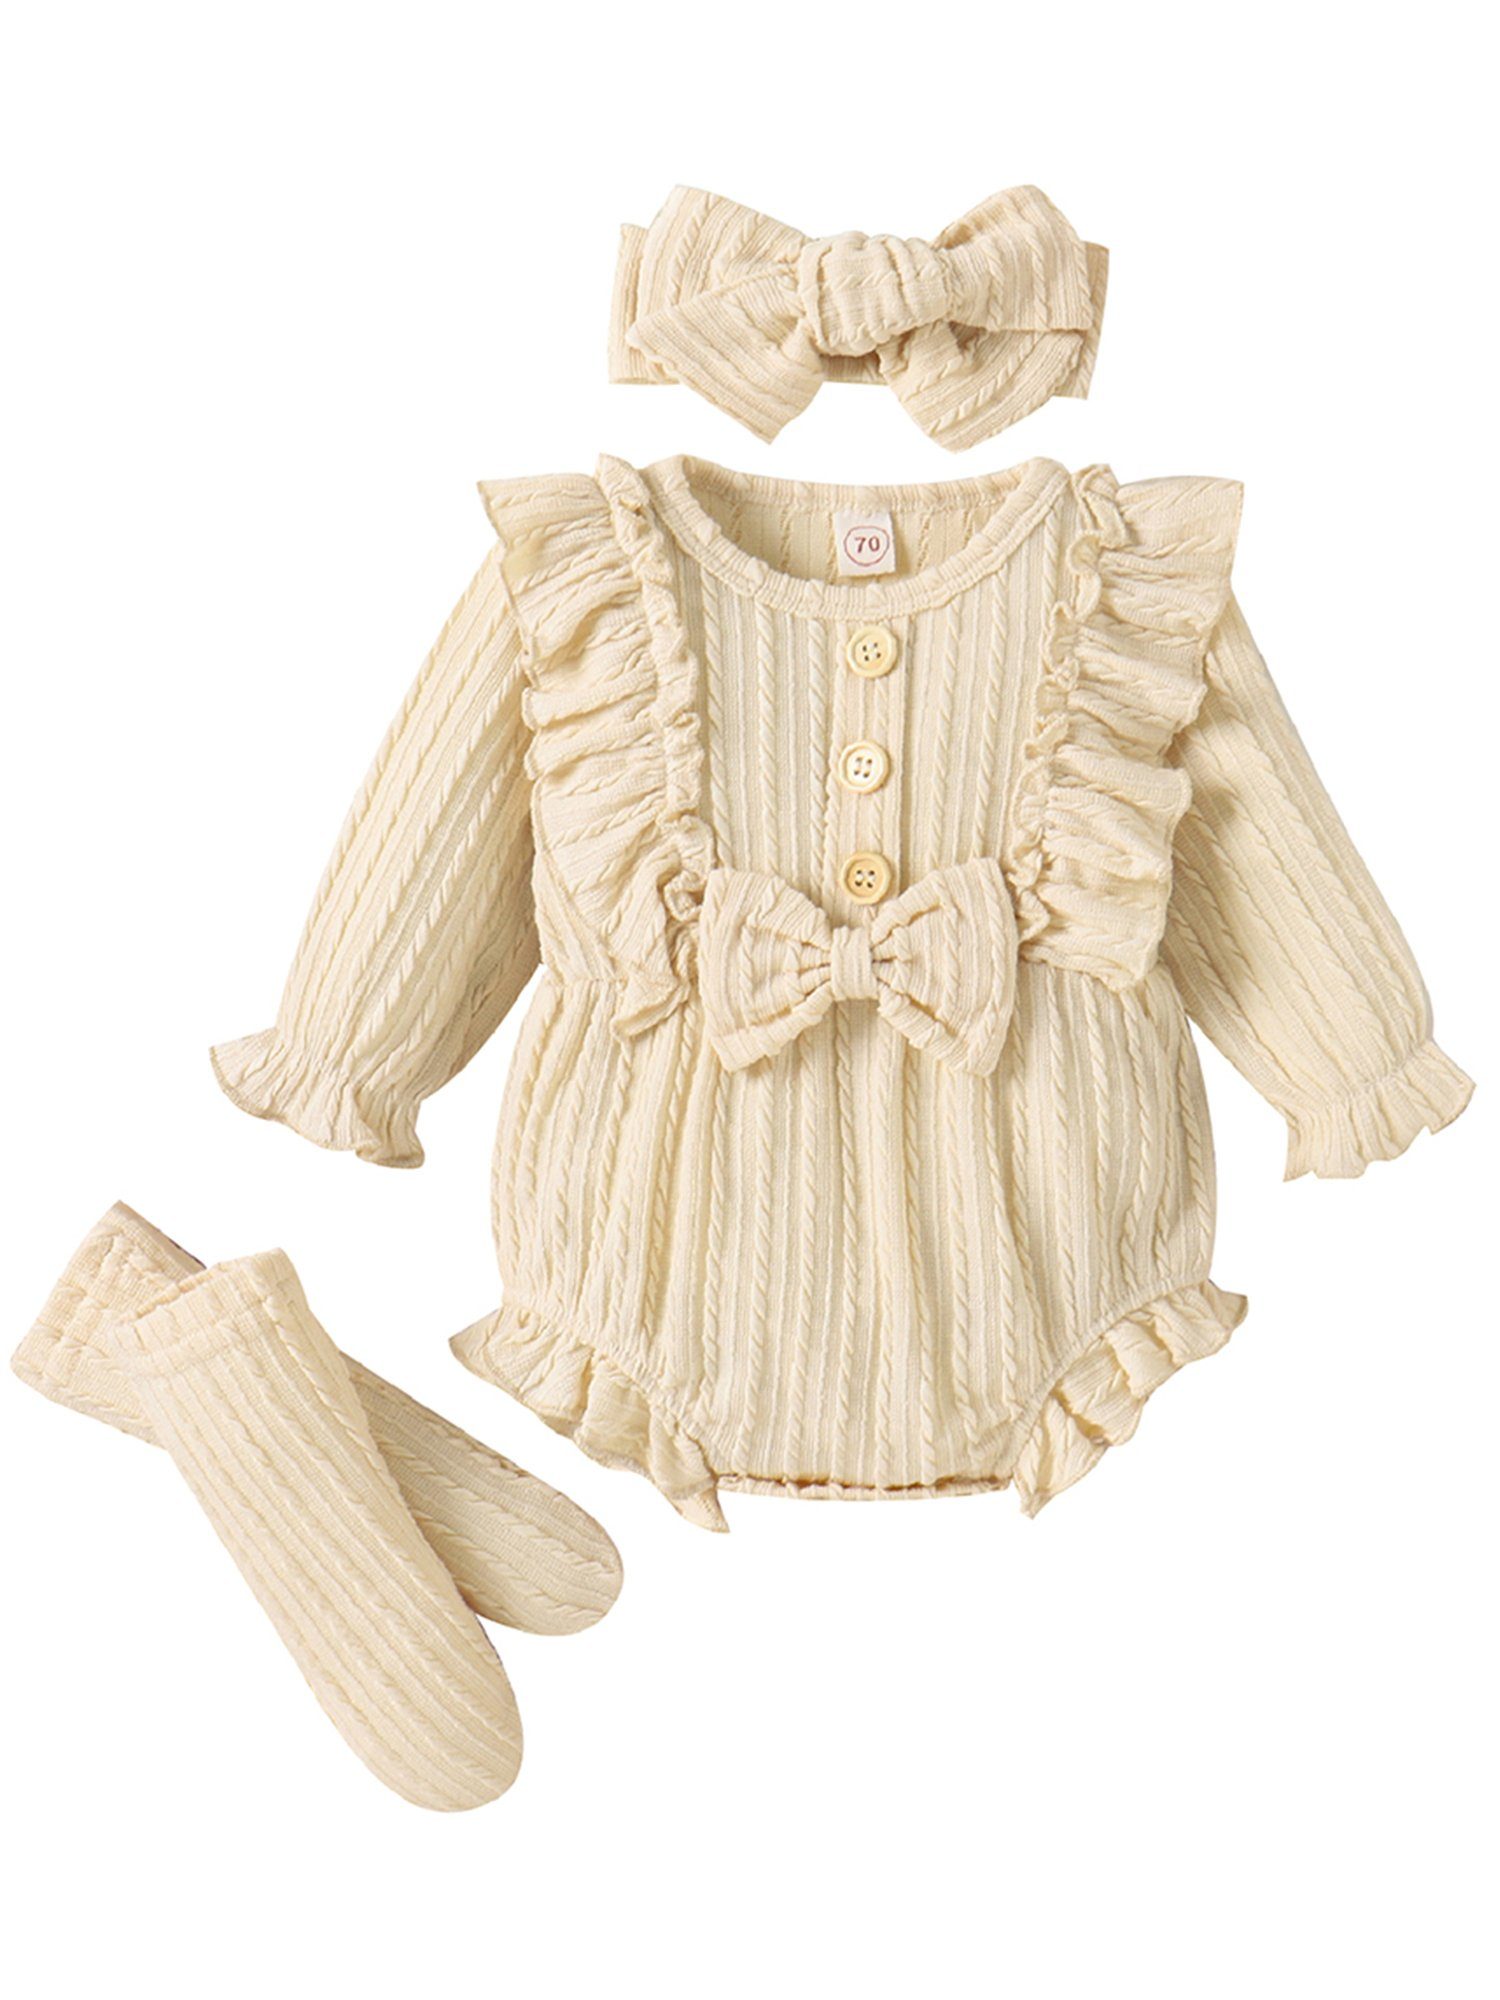 LAPA Strampler Einfarbiger Anzug für Babys, 3-teilig, Schleife Dekoration (Set, Strampler, Socken und Strinband) Baby Mädchen Jacquard Strickkleidung mit Rüschen Schleifenverzierung